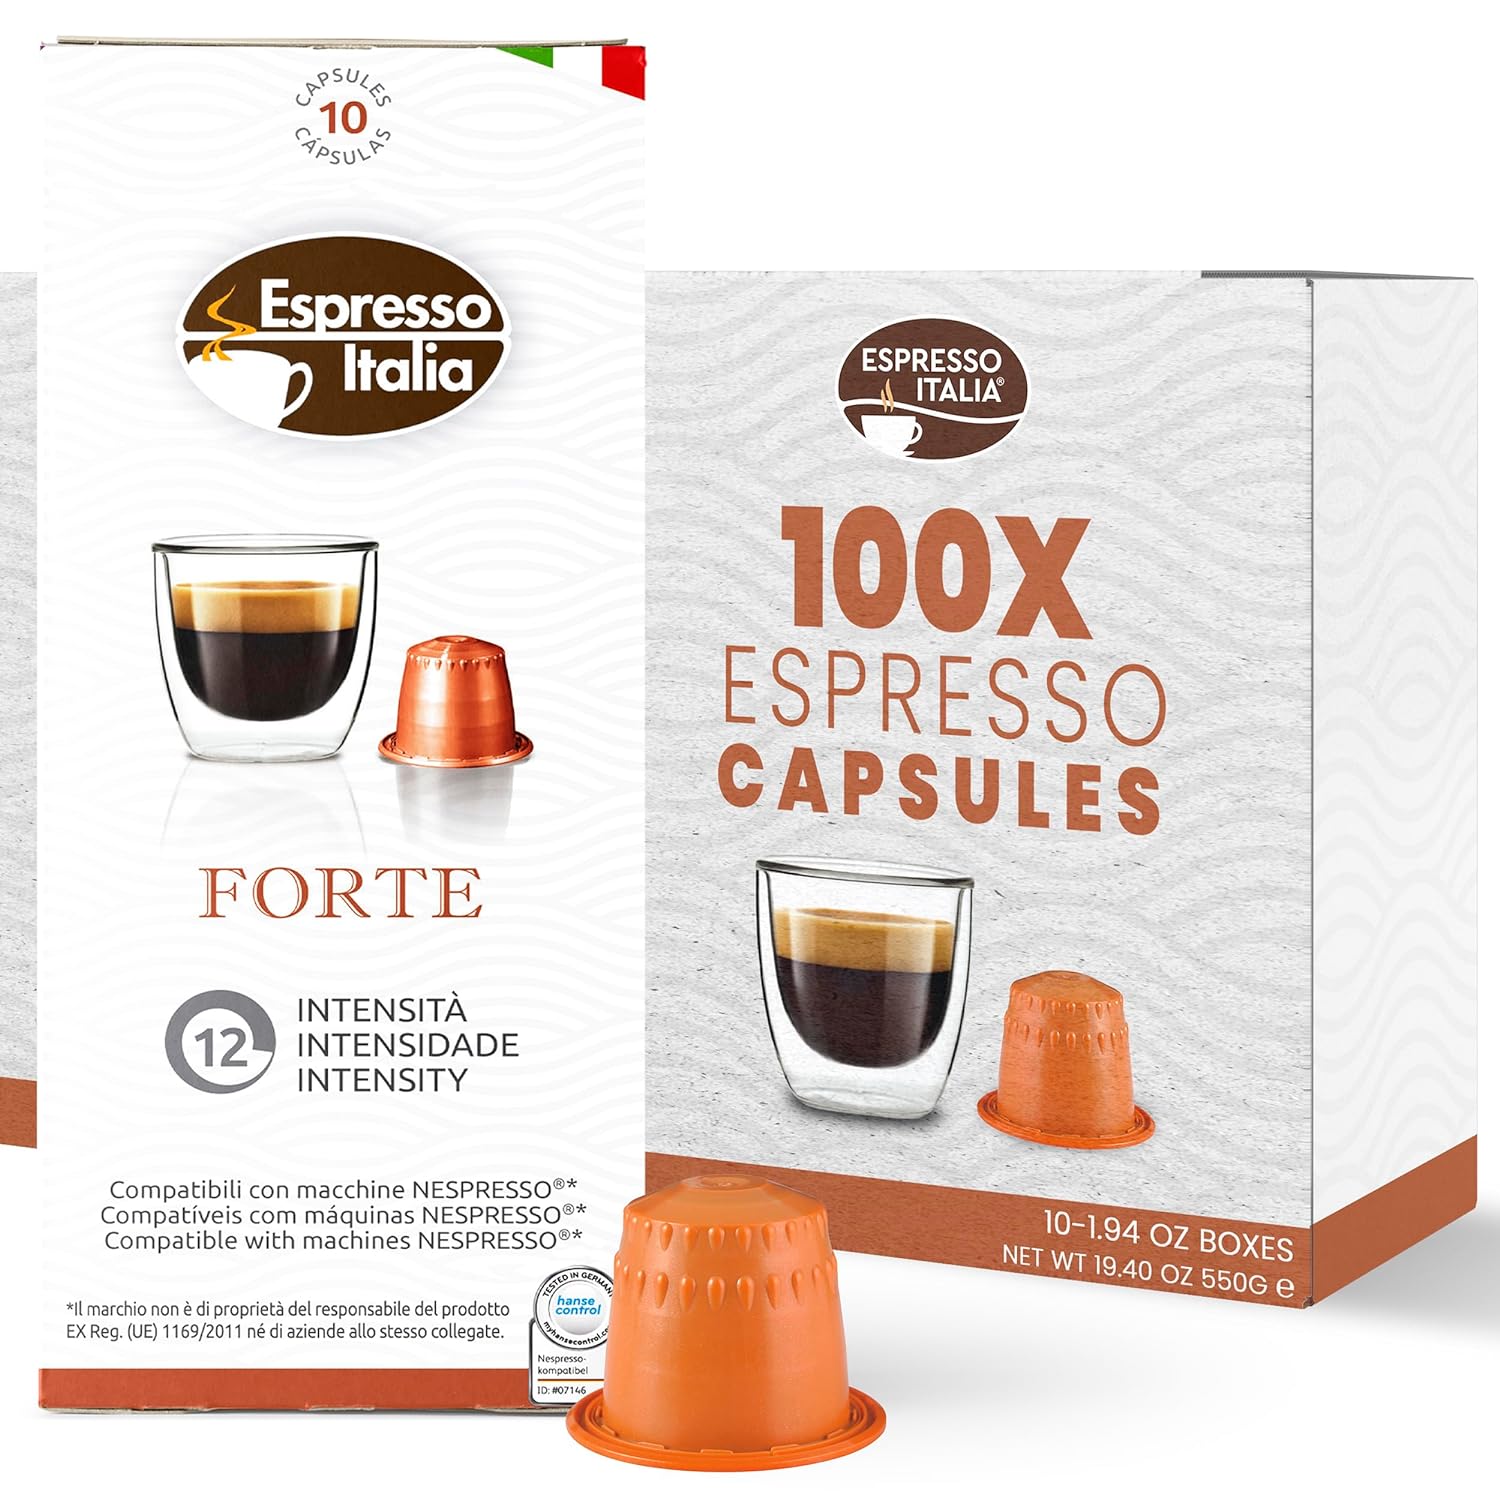 ESPRESSO ITALIA Capsules Compatible with Nespresso Machines, 100 Count - FORTE, Italian Coffee Pods Expresso Intensity 12